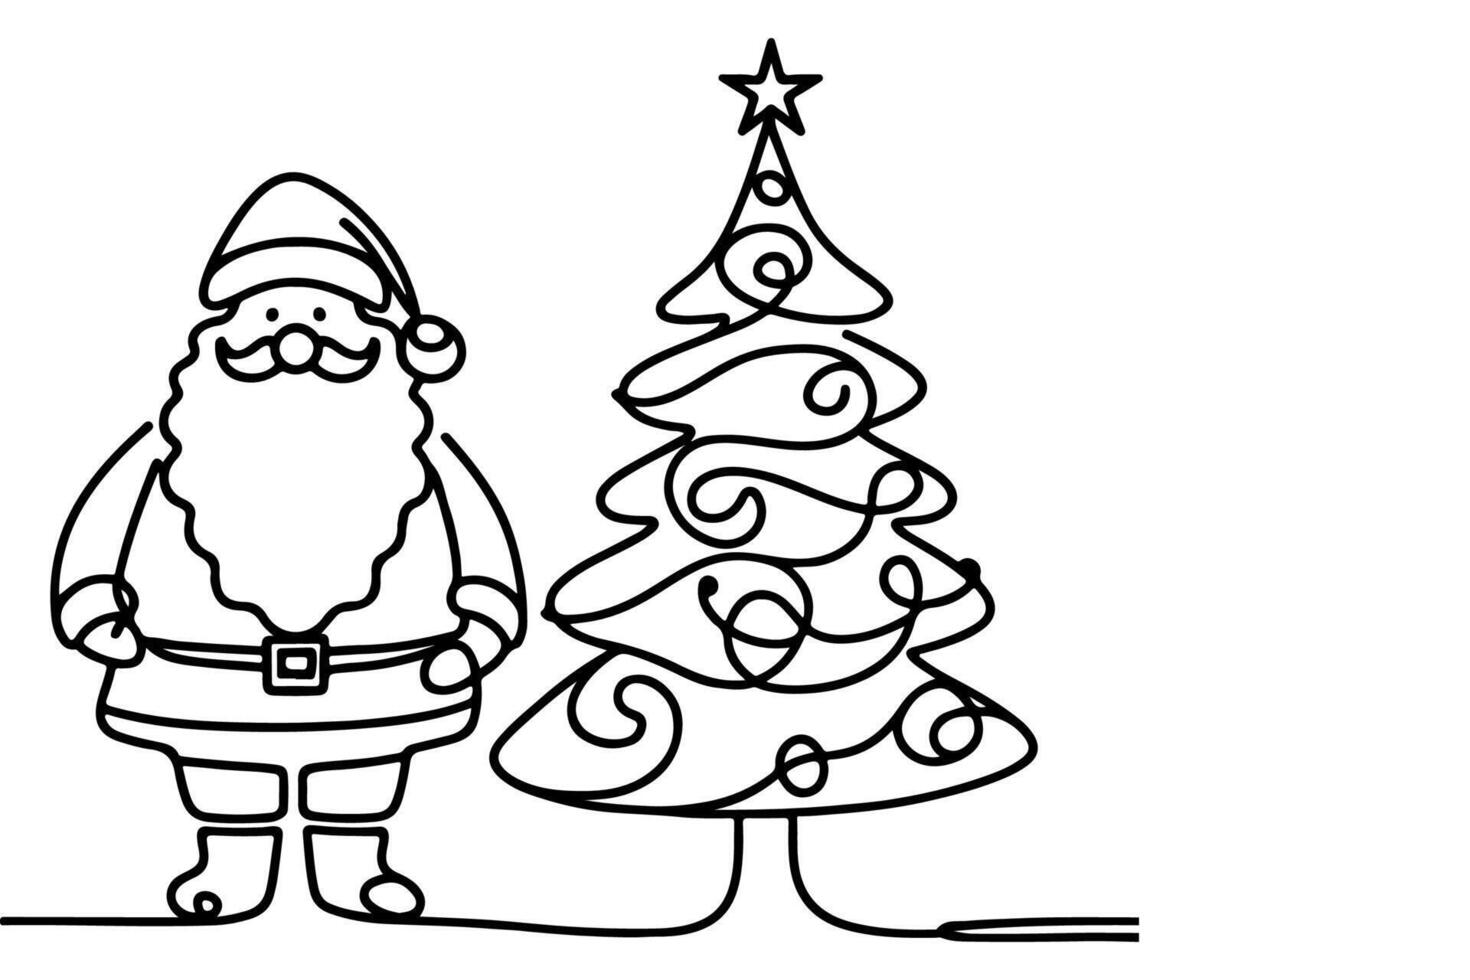 ai generato ne continuo nero linea arte disegno di allegro Natale albero. mano disegnato di Santa Claus schema scarabocchio vettore illustrazione